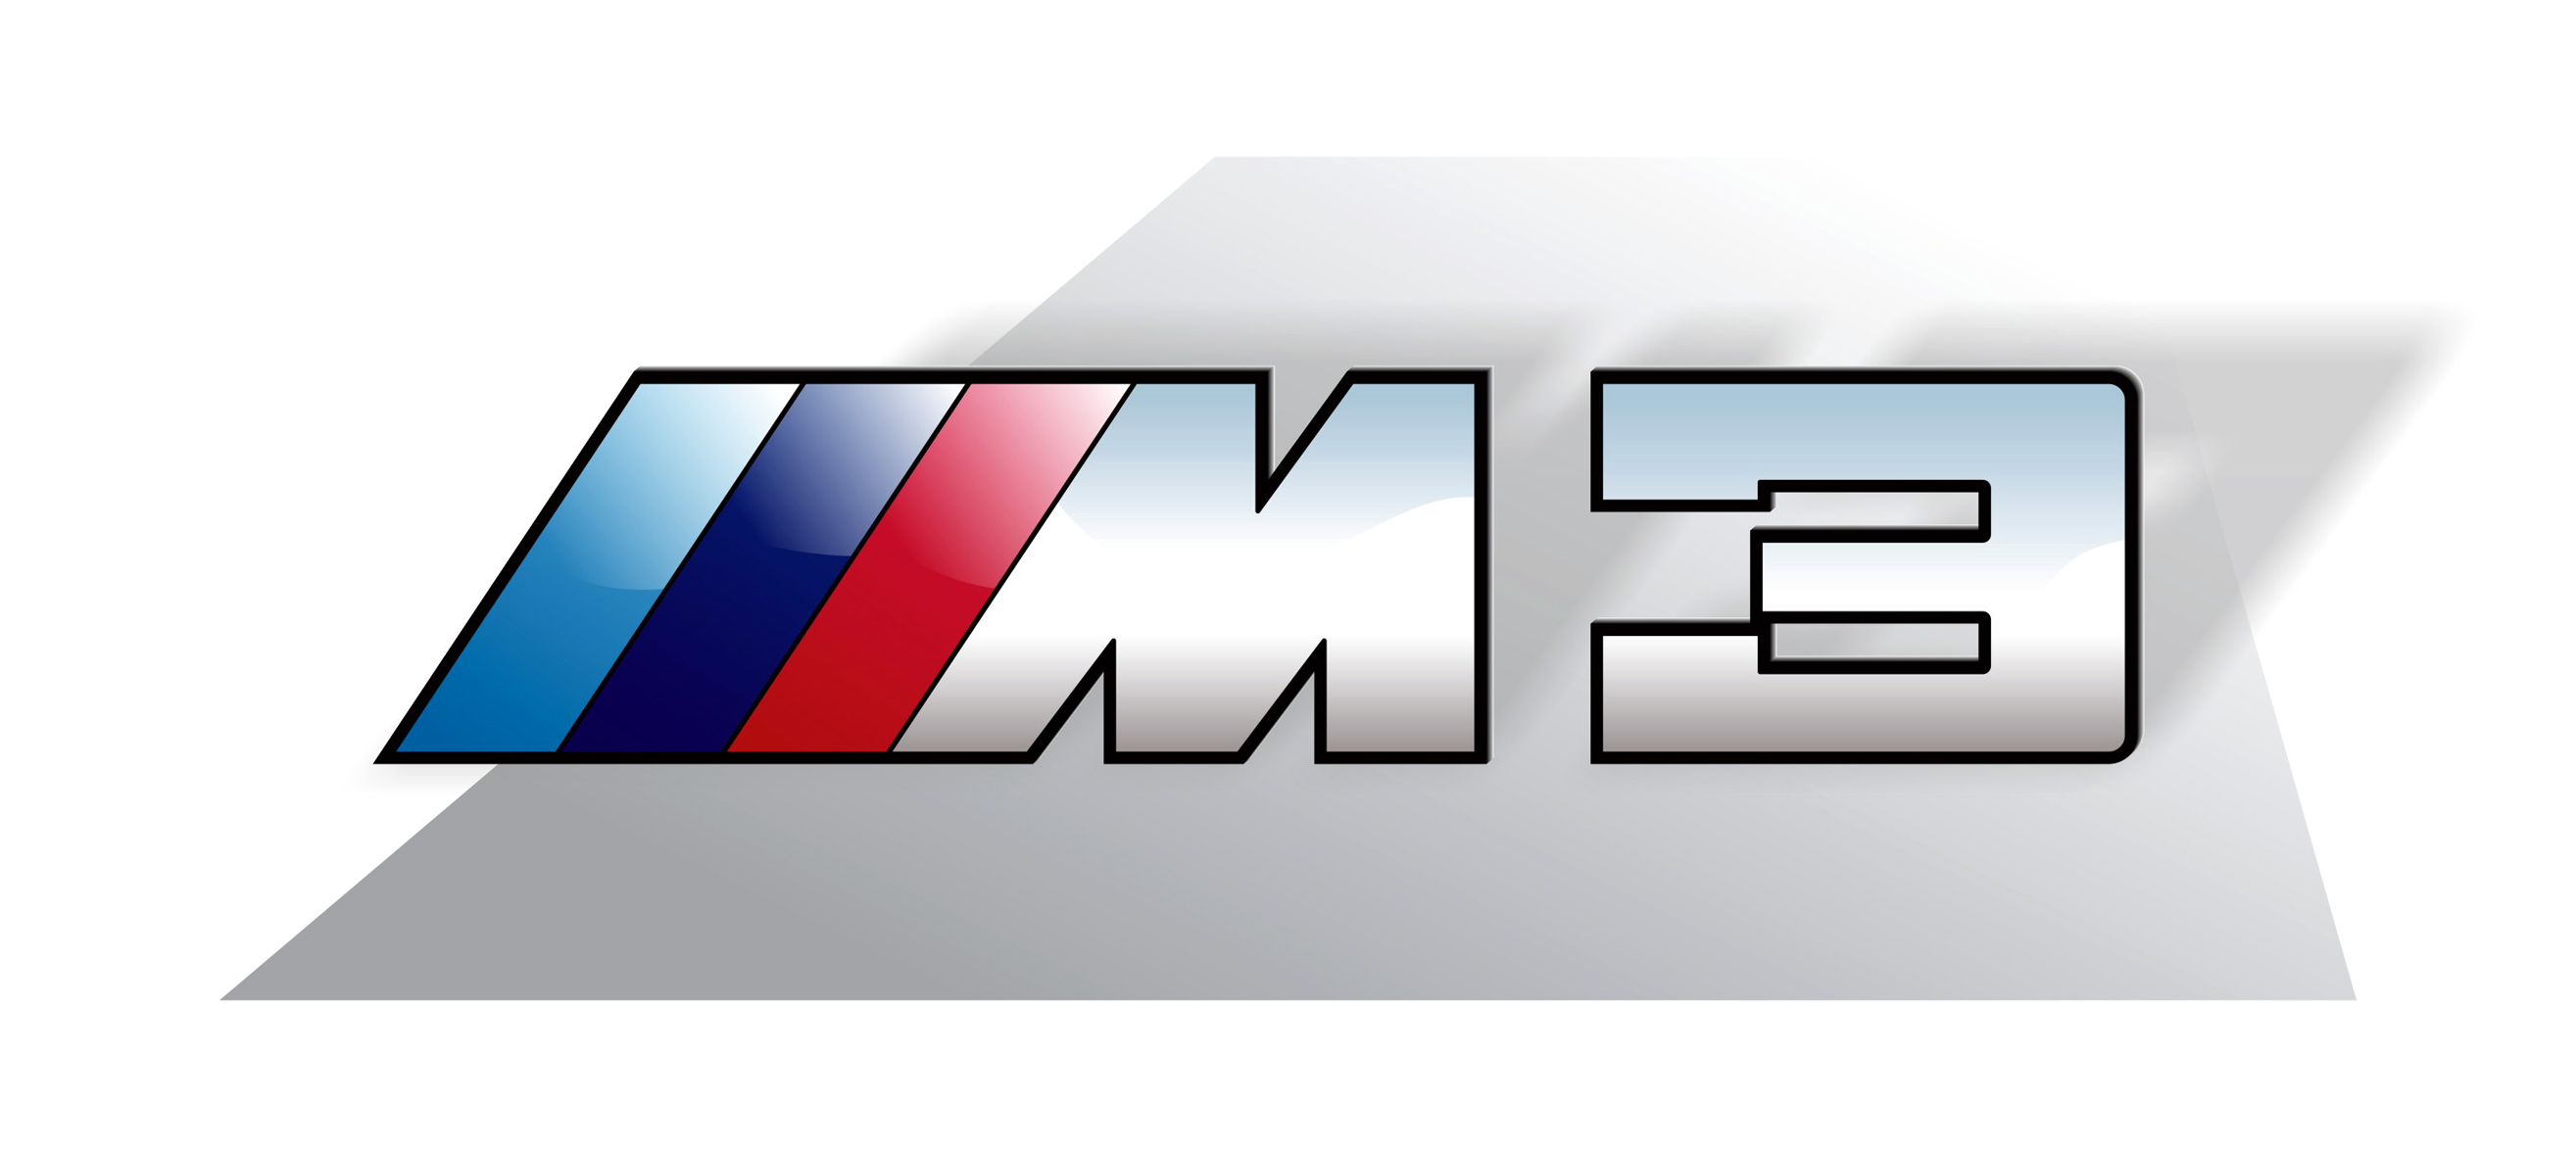 Get bmw m3 logo images | www.imagebadger.com